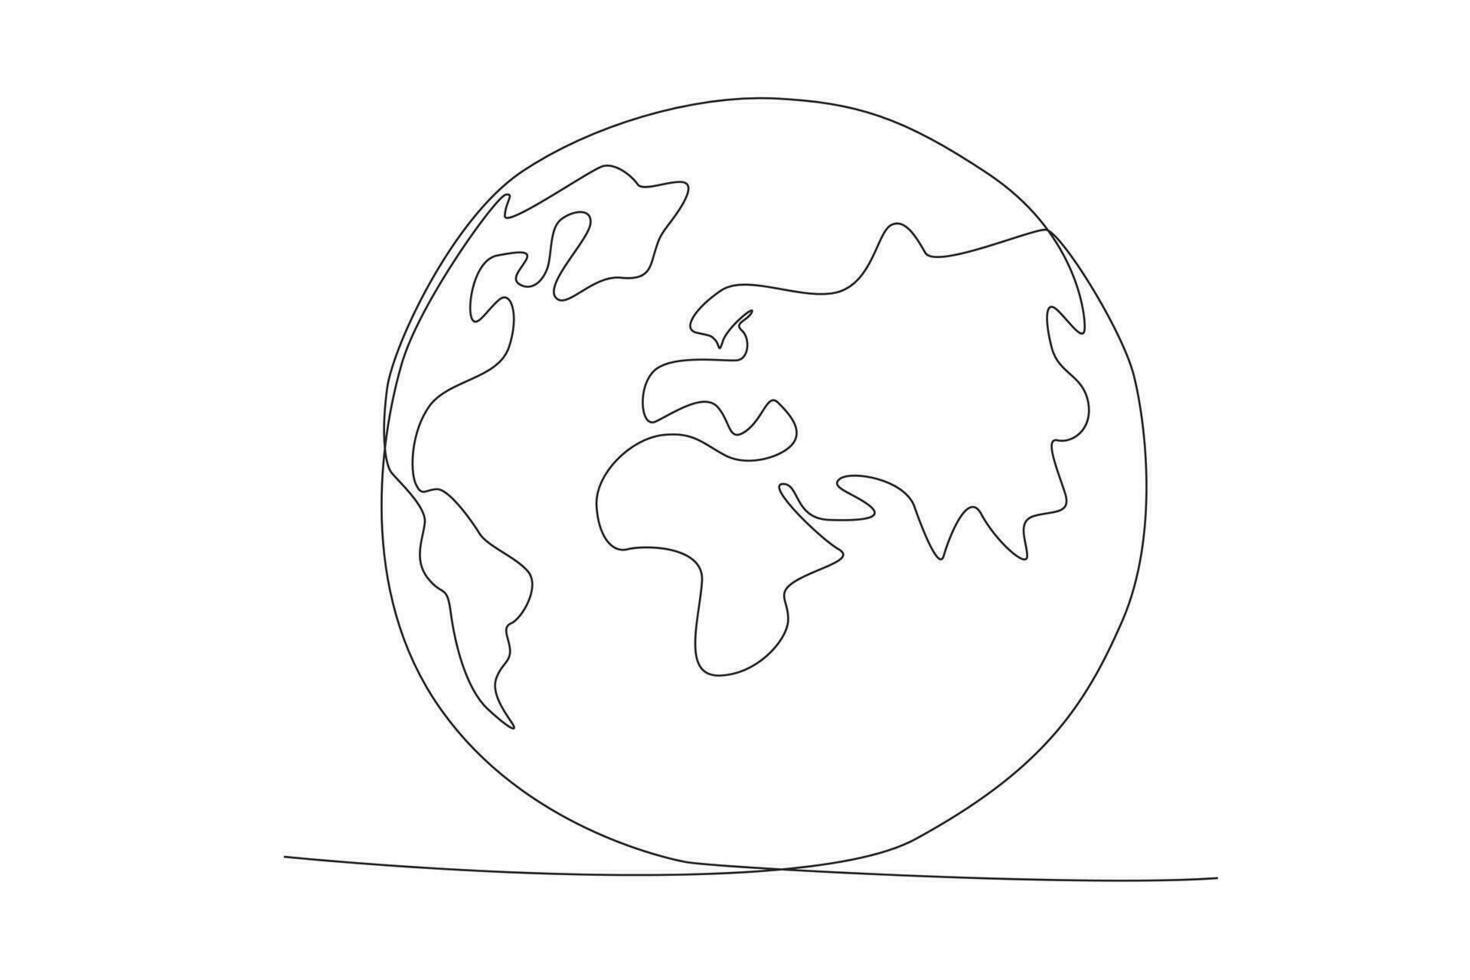 planeet aarde. single doorlopend lijn ronde globaal kaart aardrijkskunde grafisch icoon. gemakkelijk een lijn trek tekening voor onderwijs concept. geïsoleerd vector illustratie minimalistische ontwerp.